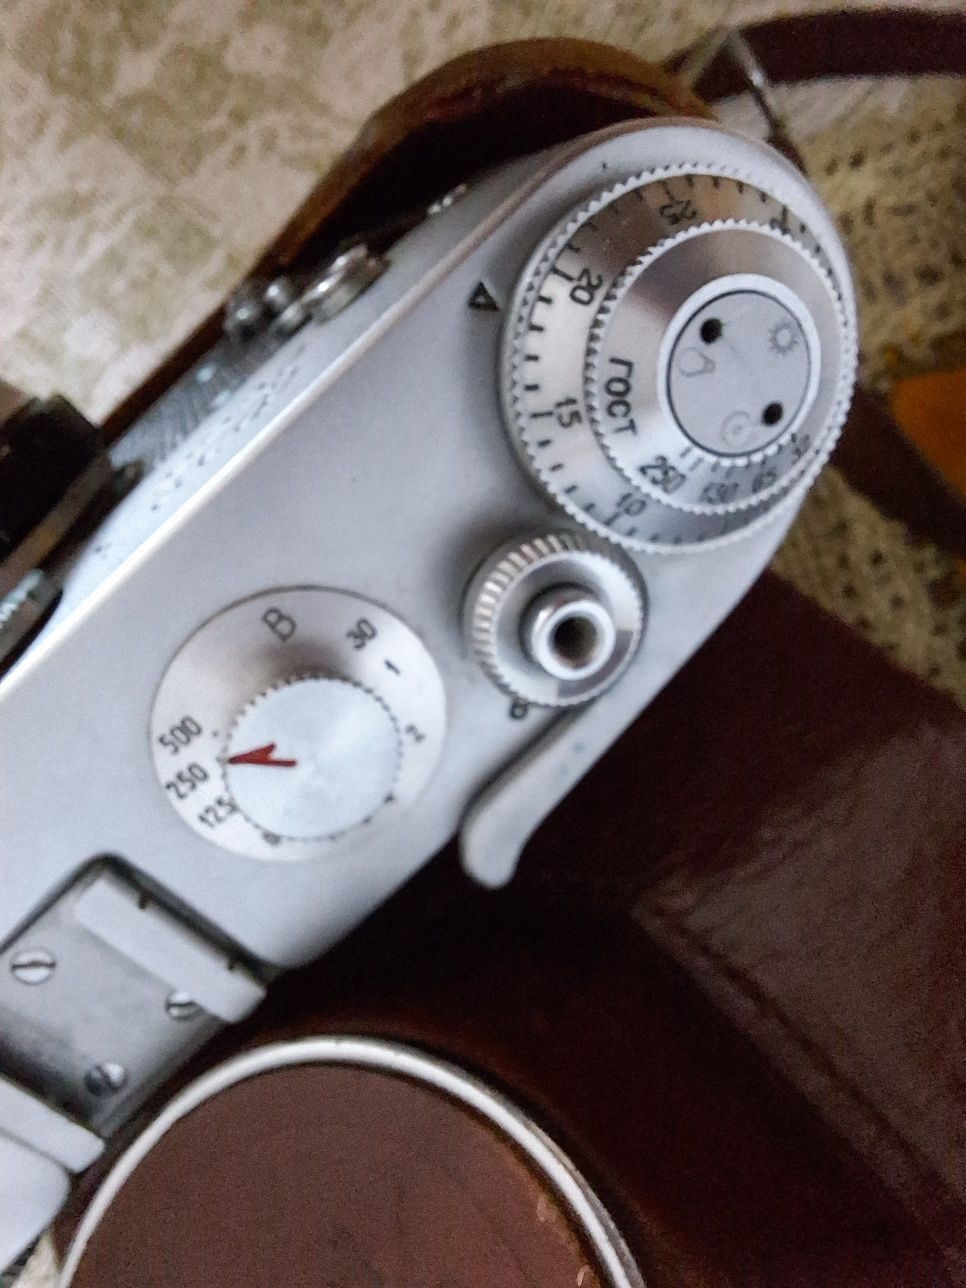 Radziecki aparat analogowy FED 3 ze skórzanym pokrowcem, stan bdb